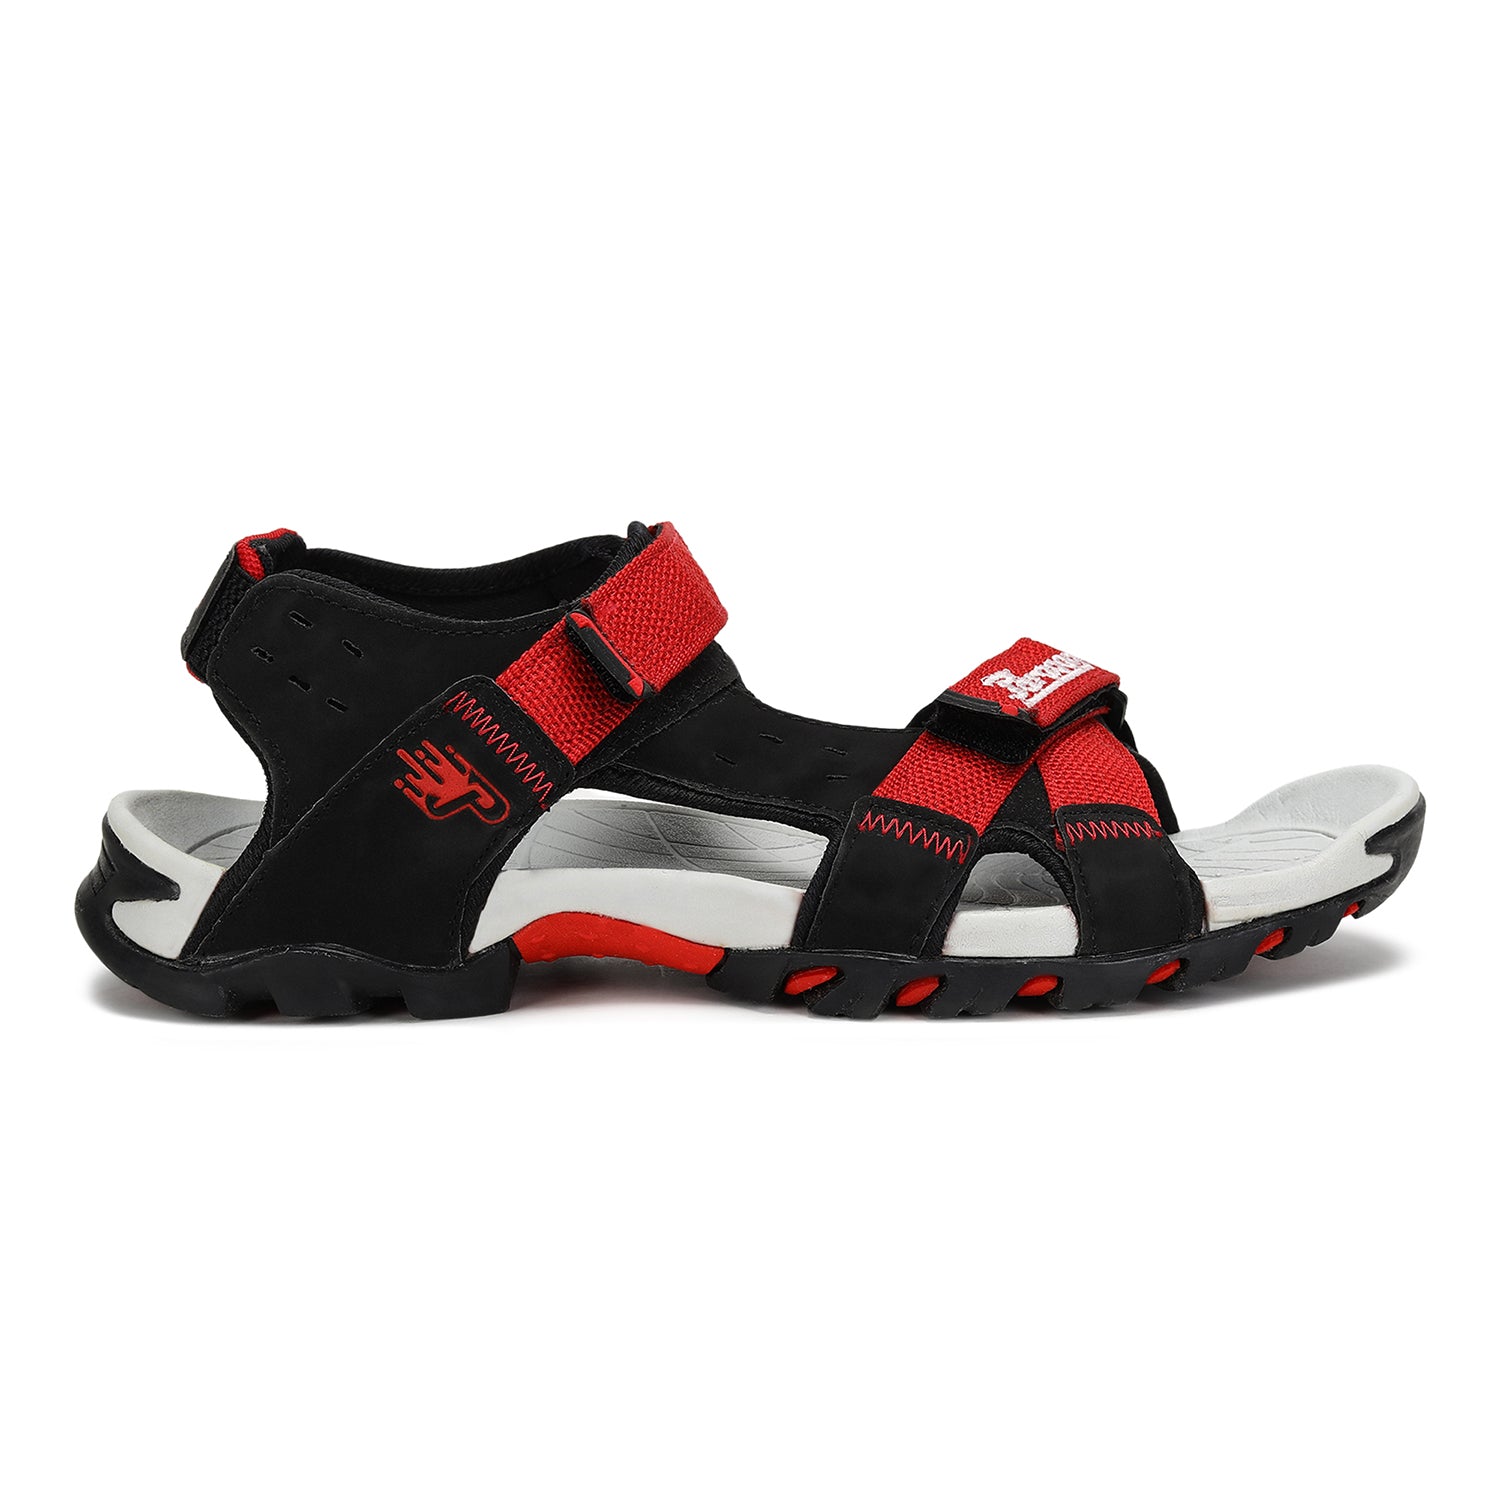 Buy Sandals for men SS 101 - Sandals & Slippers for Men | Relaxo